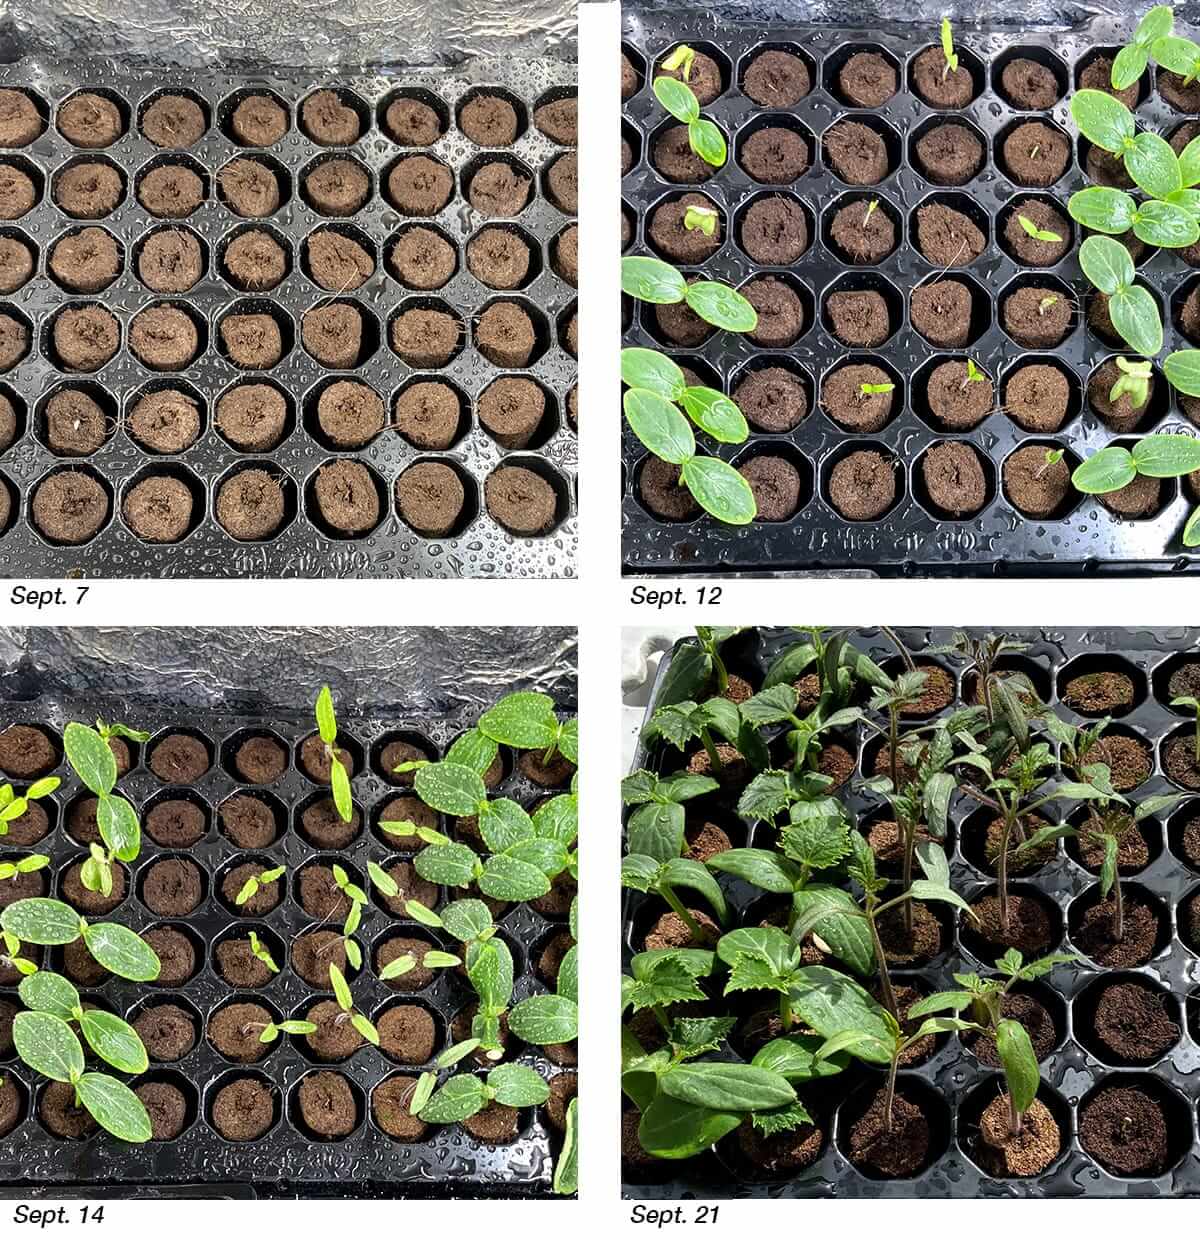 quad-seedlings-over-4-weeks-growth.jpg